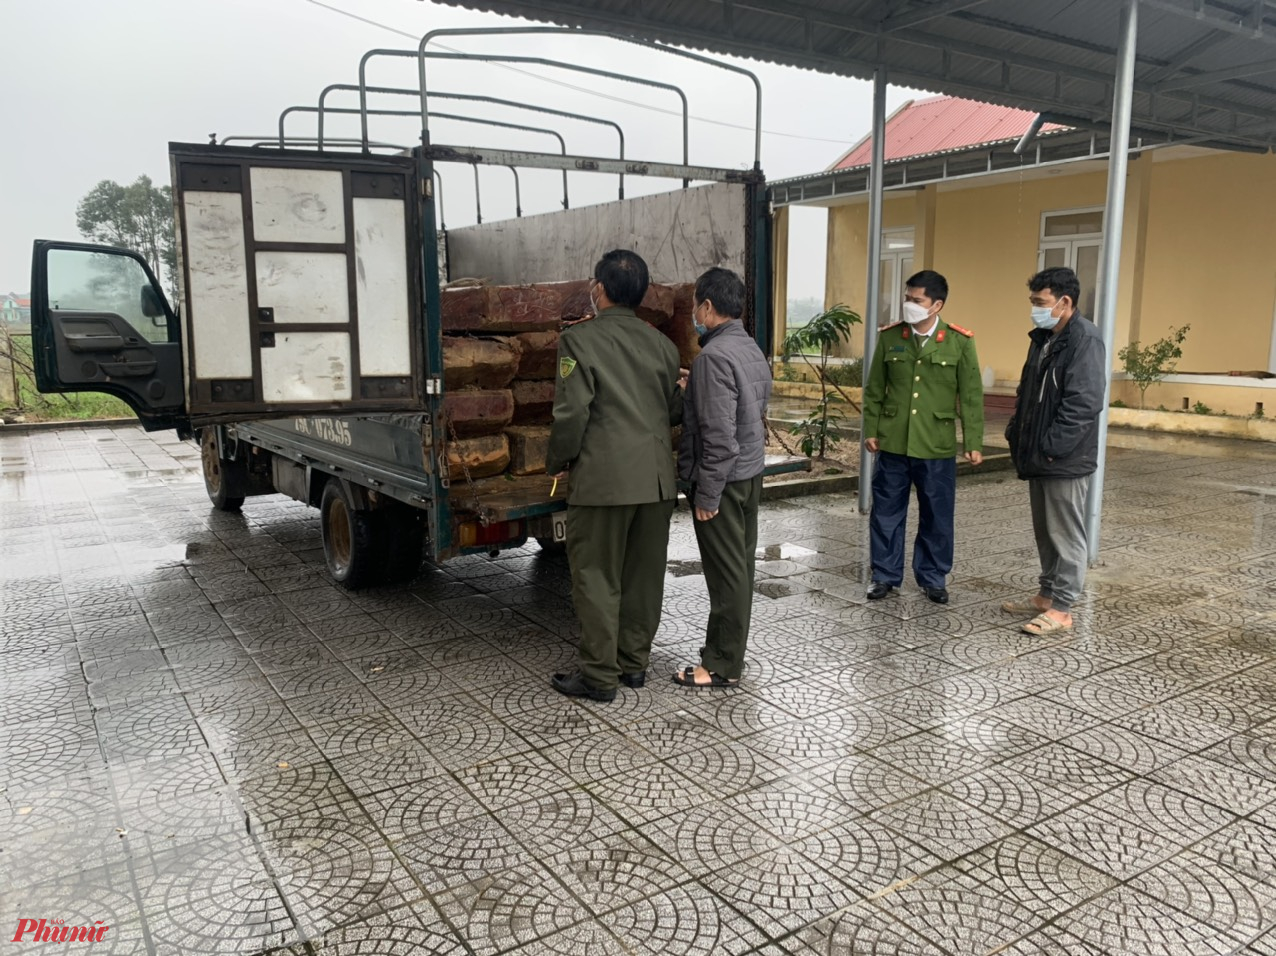 Hiện tại gỗ lậu vừa bắt giữ đã được bàn giao cho Hạt kiểm lâm huyện Quảng Điền để xử lý theo thẩm quyền